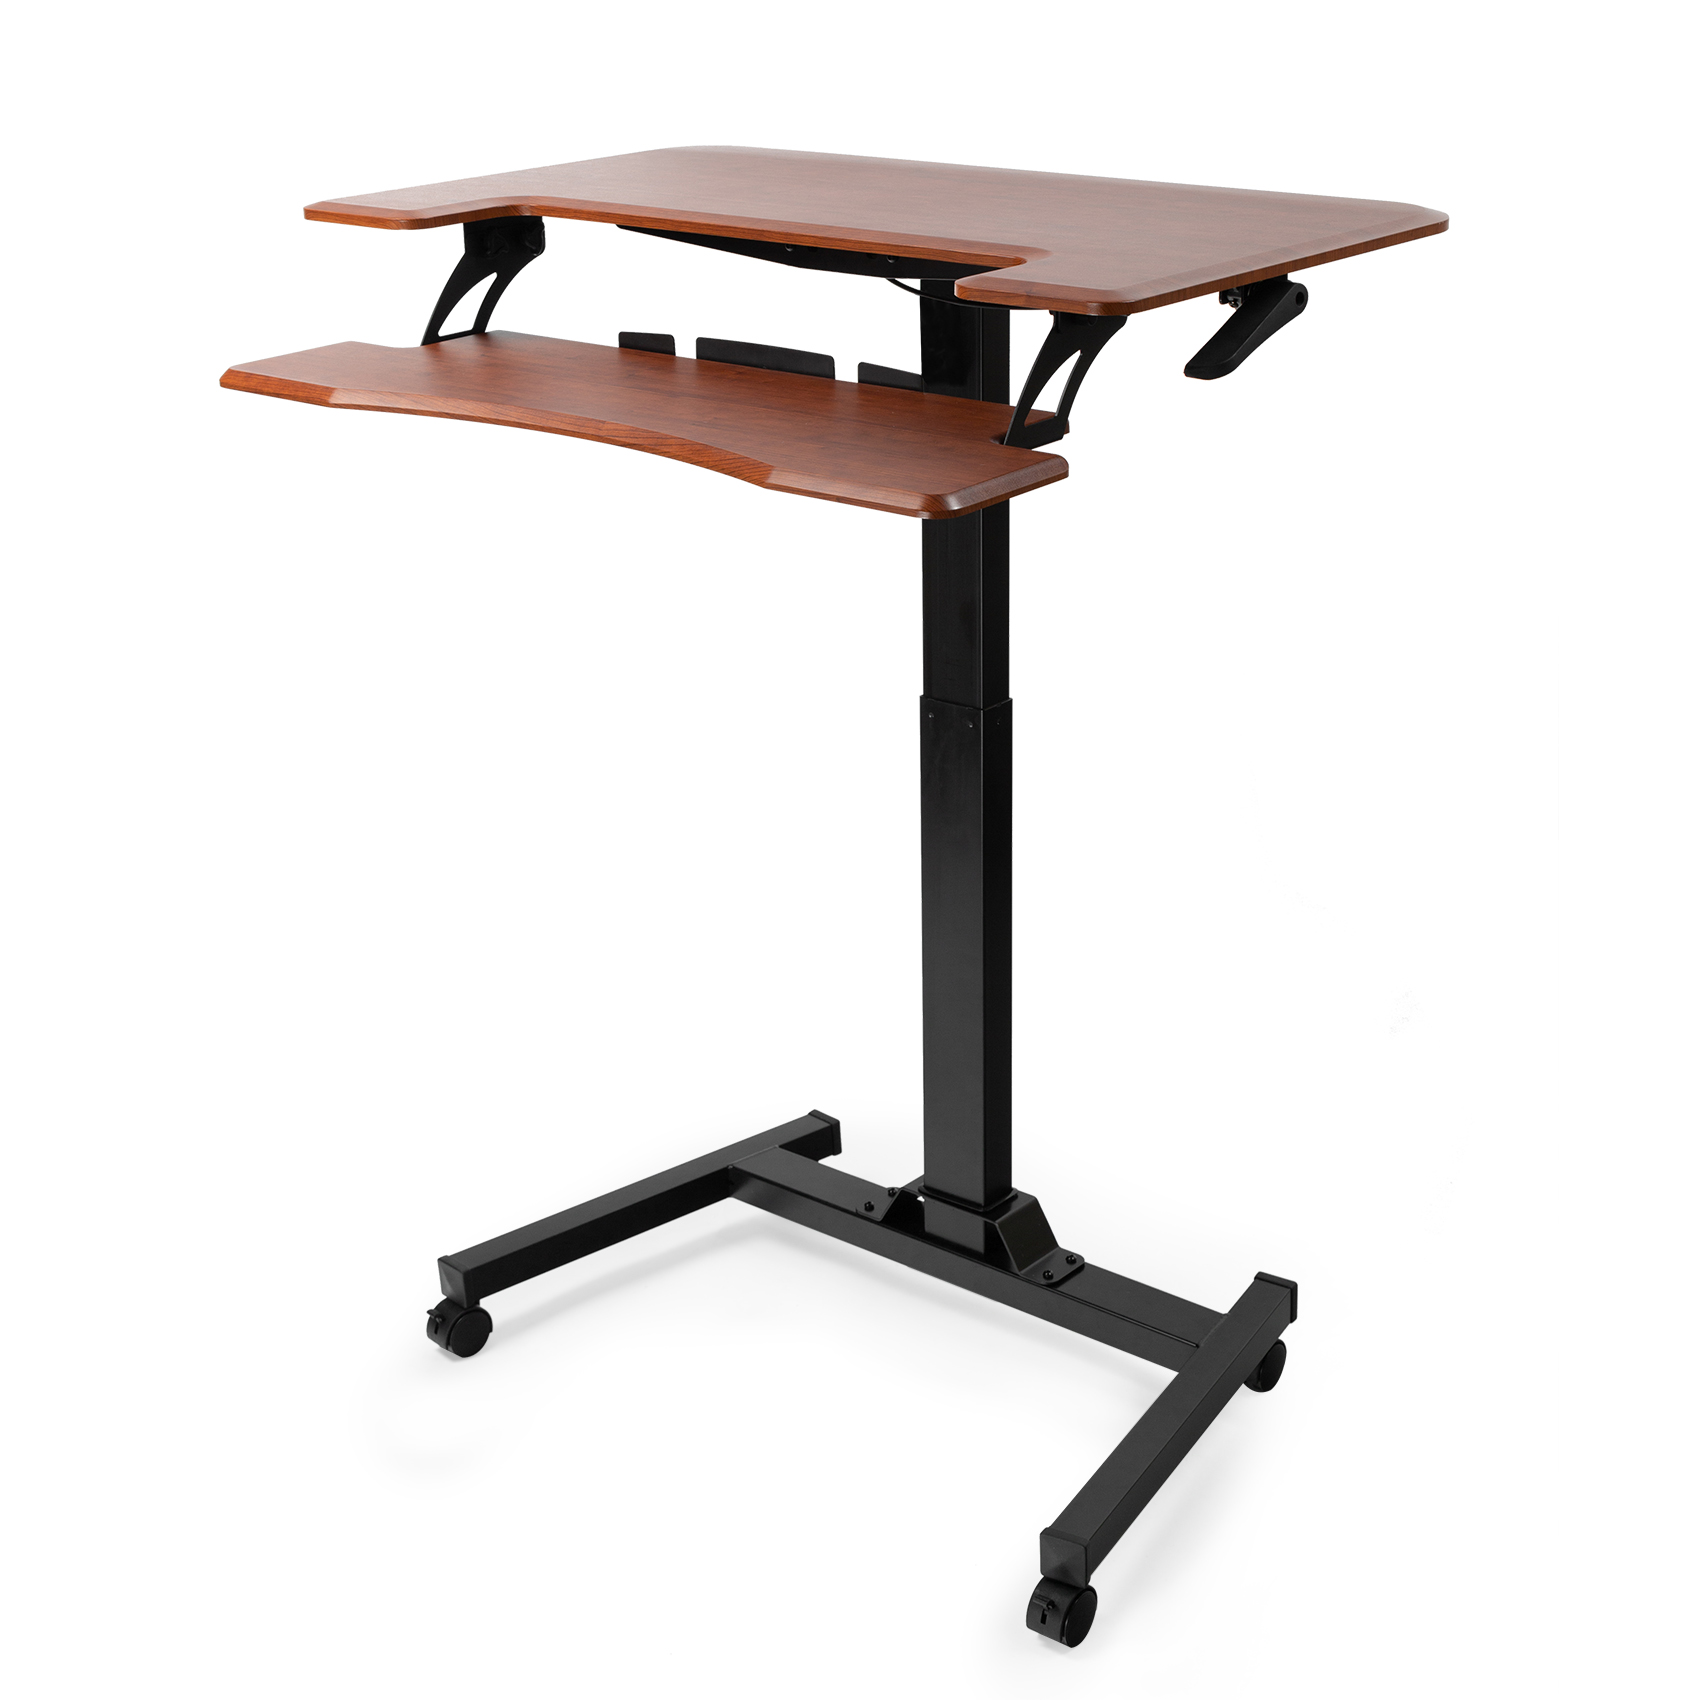 Pneumatic Height Adjustable Sit Stand Laptop Desk Movable Workstation Over Bed/Sofa Desk with Keyboard Holder - Walnut Color-Boyel Living